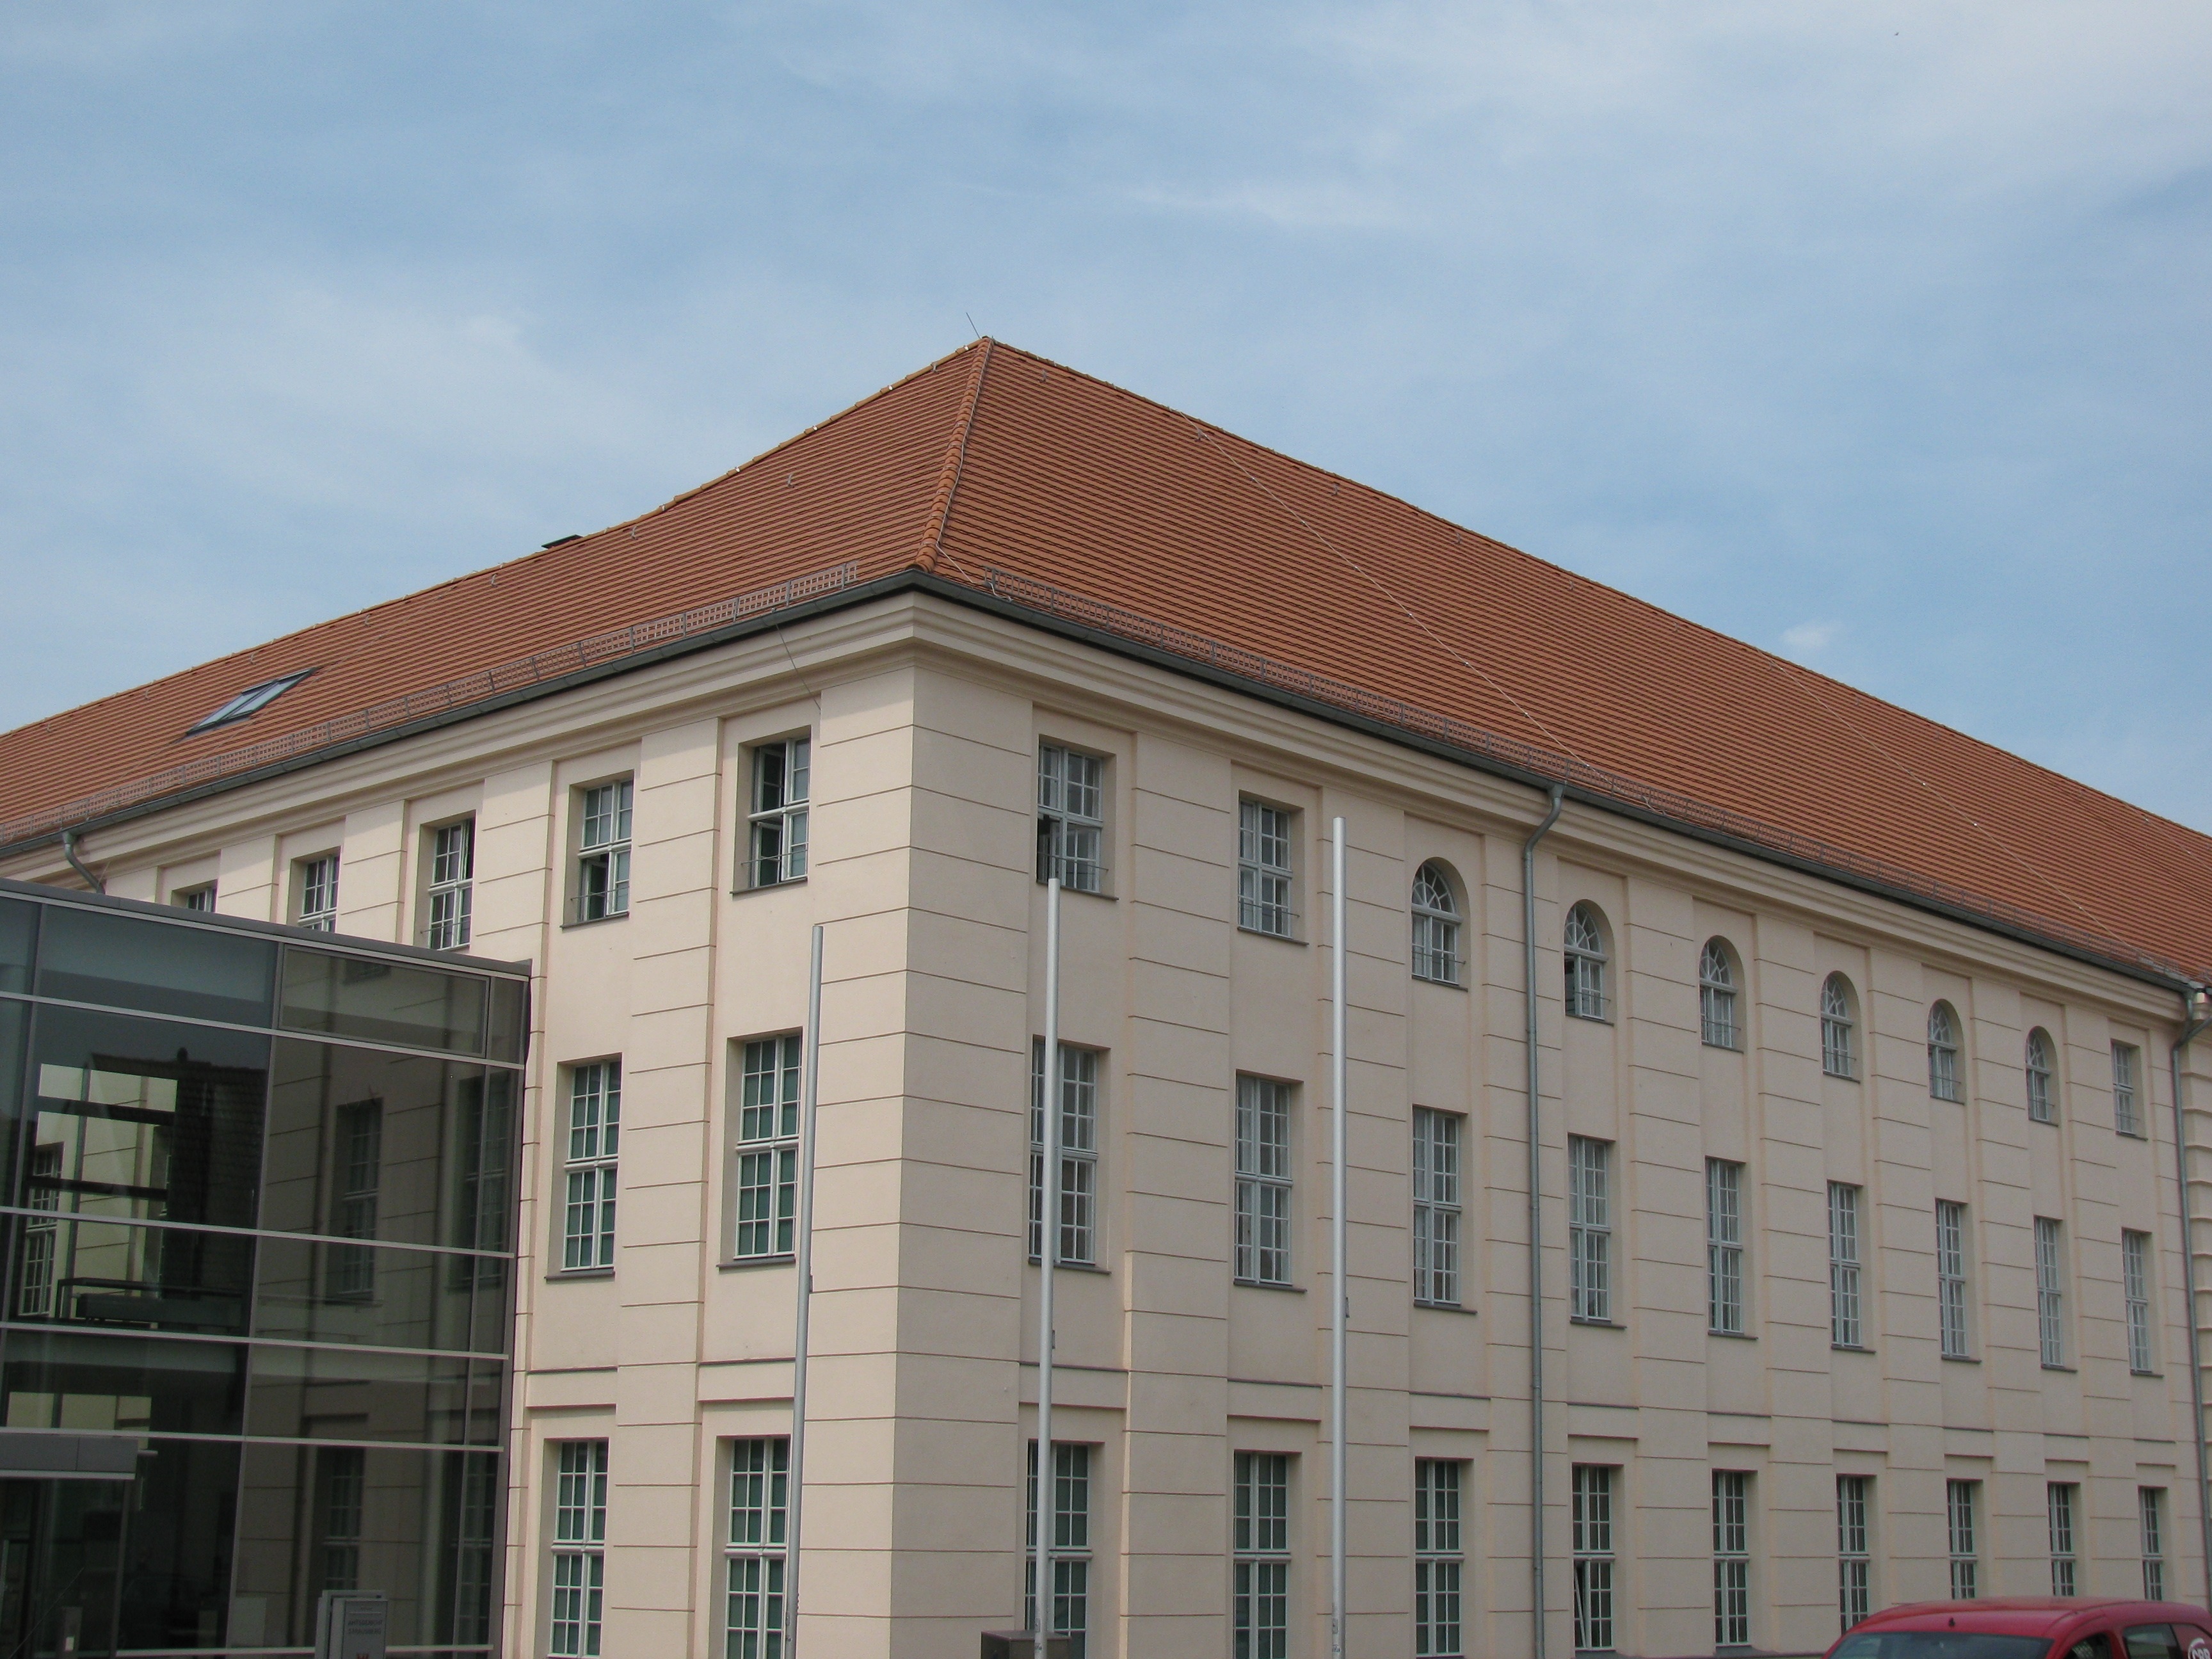 Moderner und Nördlicher Gebäudeteil des Amtsgerichtes Strausberg.